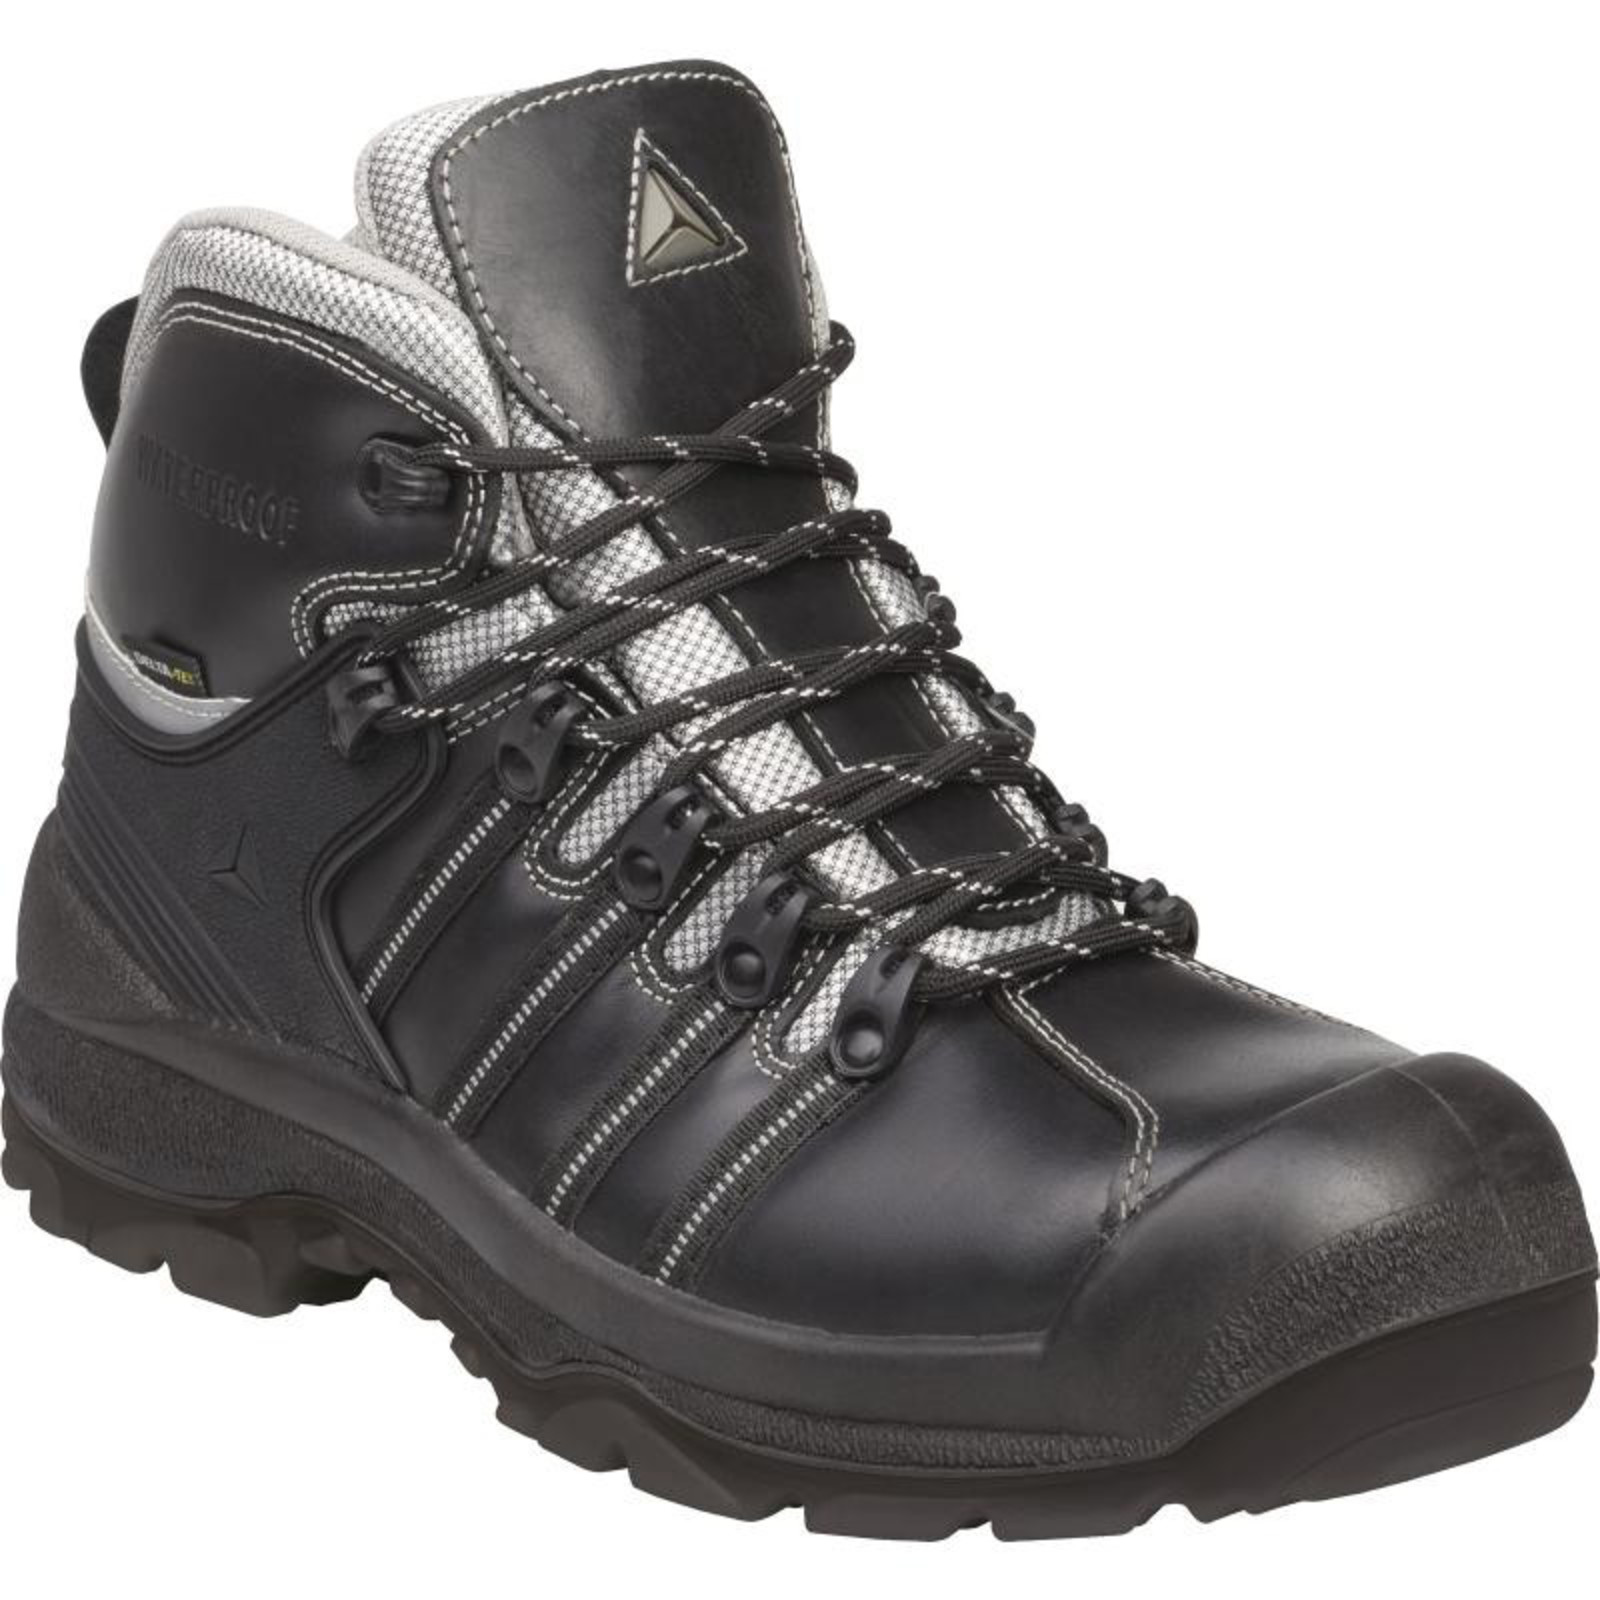 Bezpečnostné topánky Nomad S3 SRC - veľkosť: 43, farba: čierna